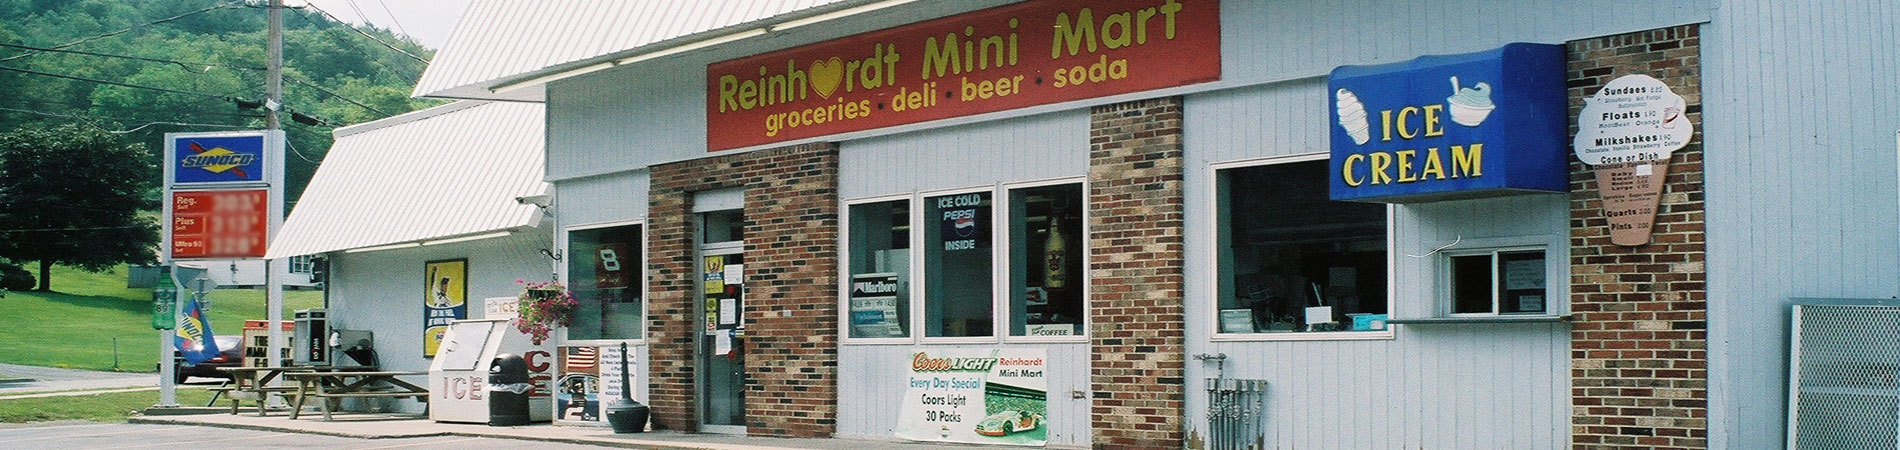 Reinhardt Minimart exterior